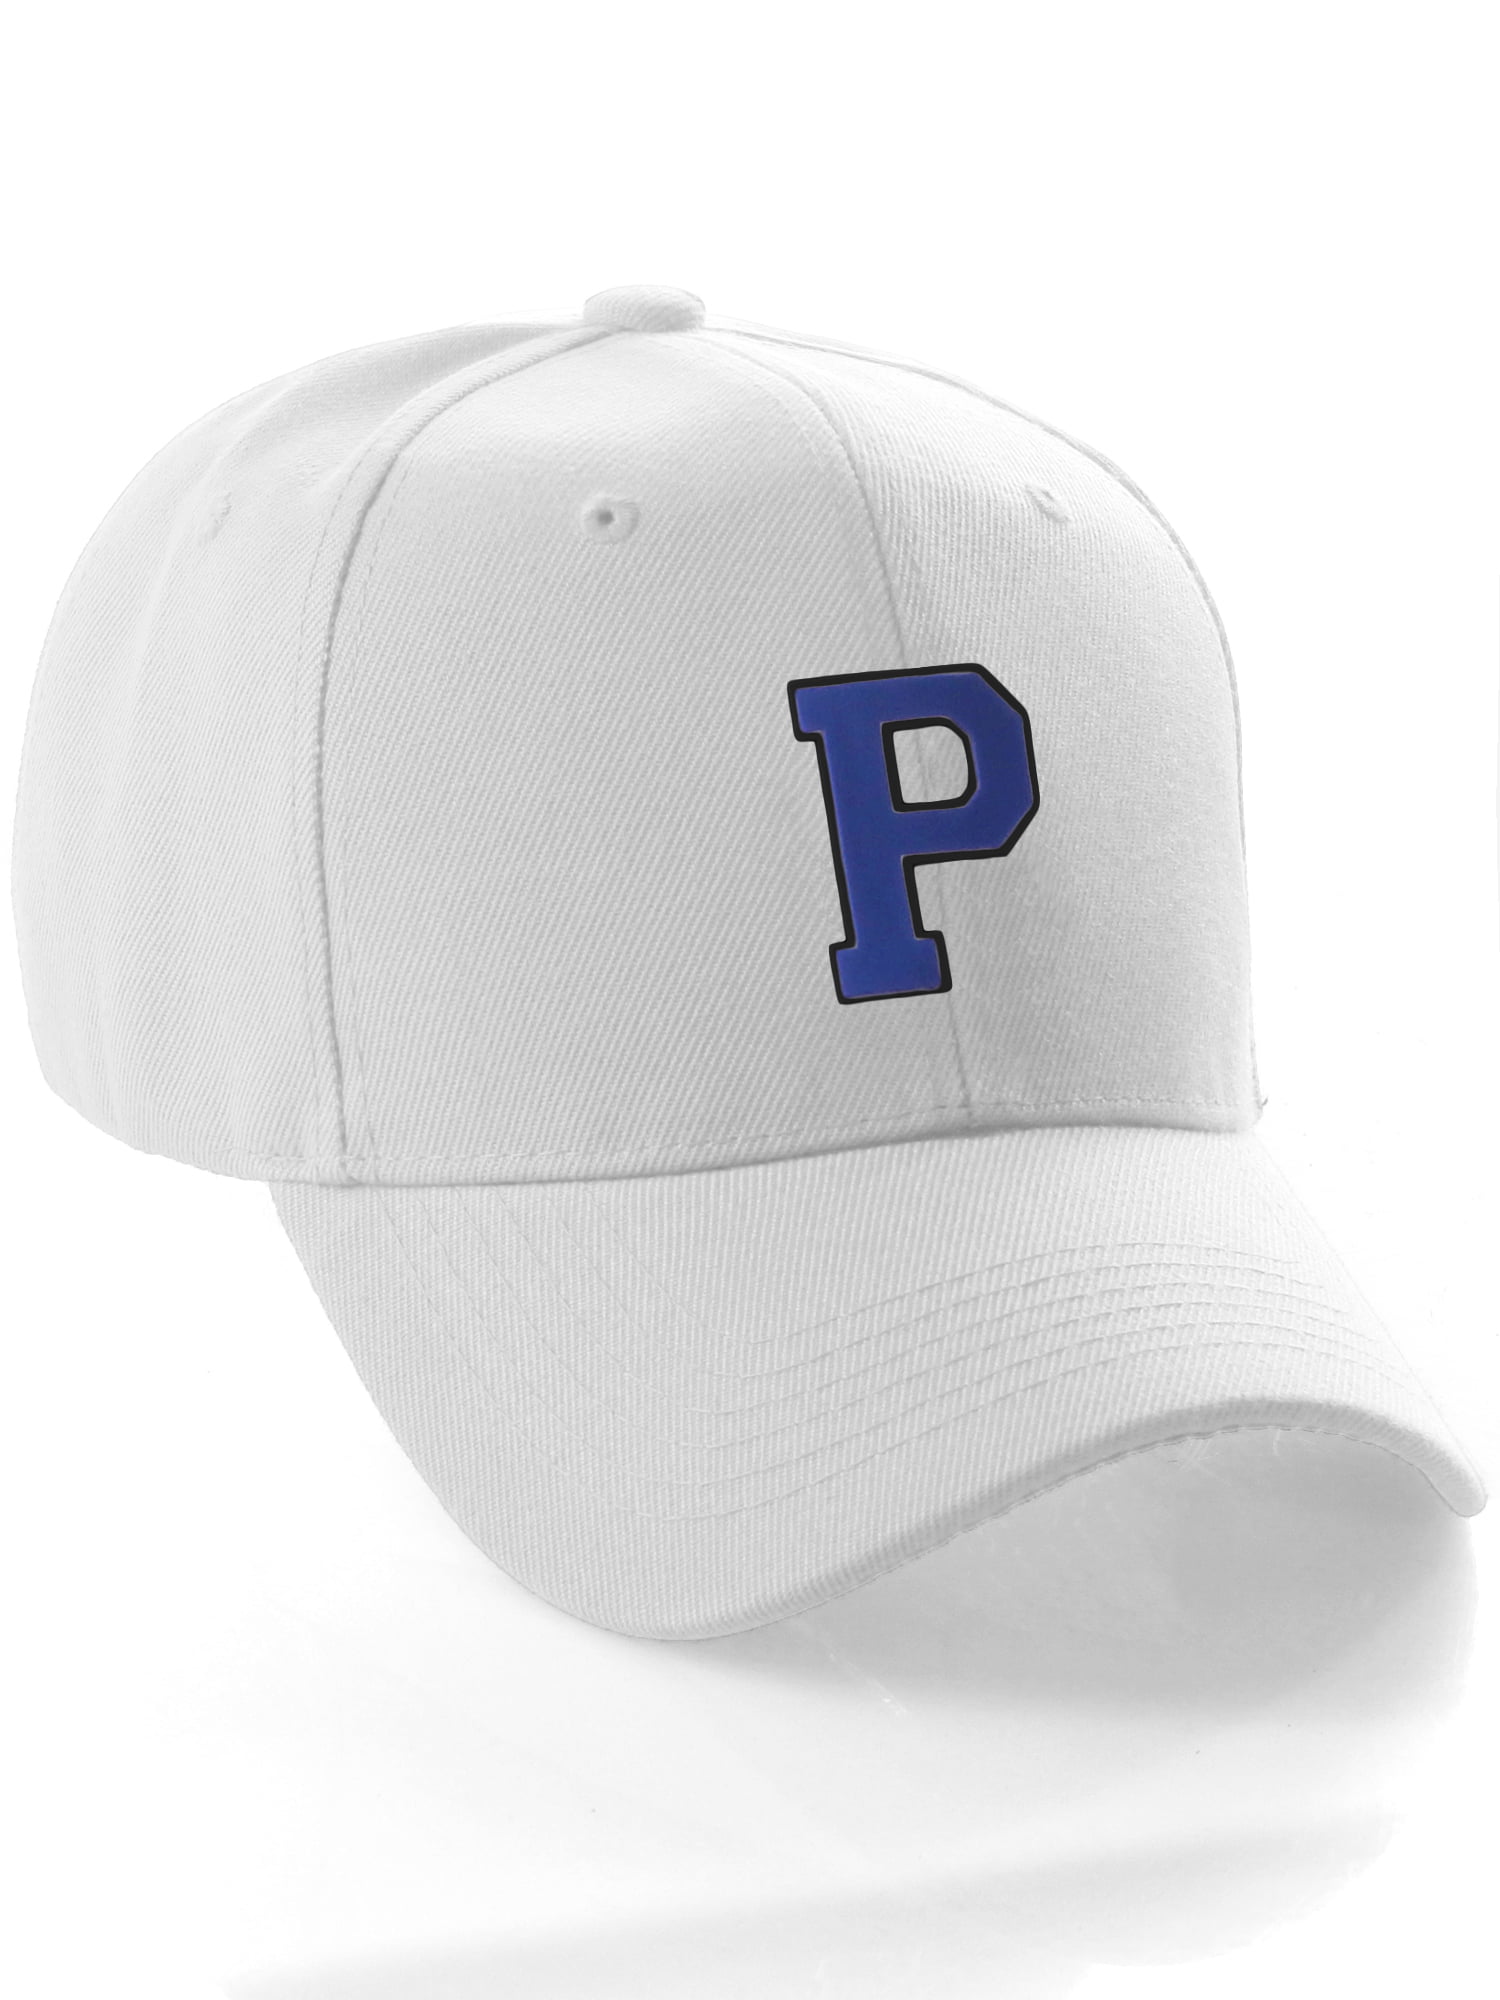 Classic Baseball Hat Custom A to Z Initial Team Letter, White Cap Black  Blue Letter P